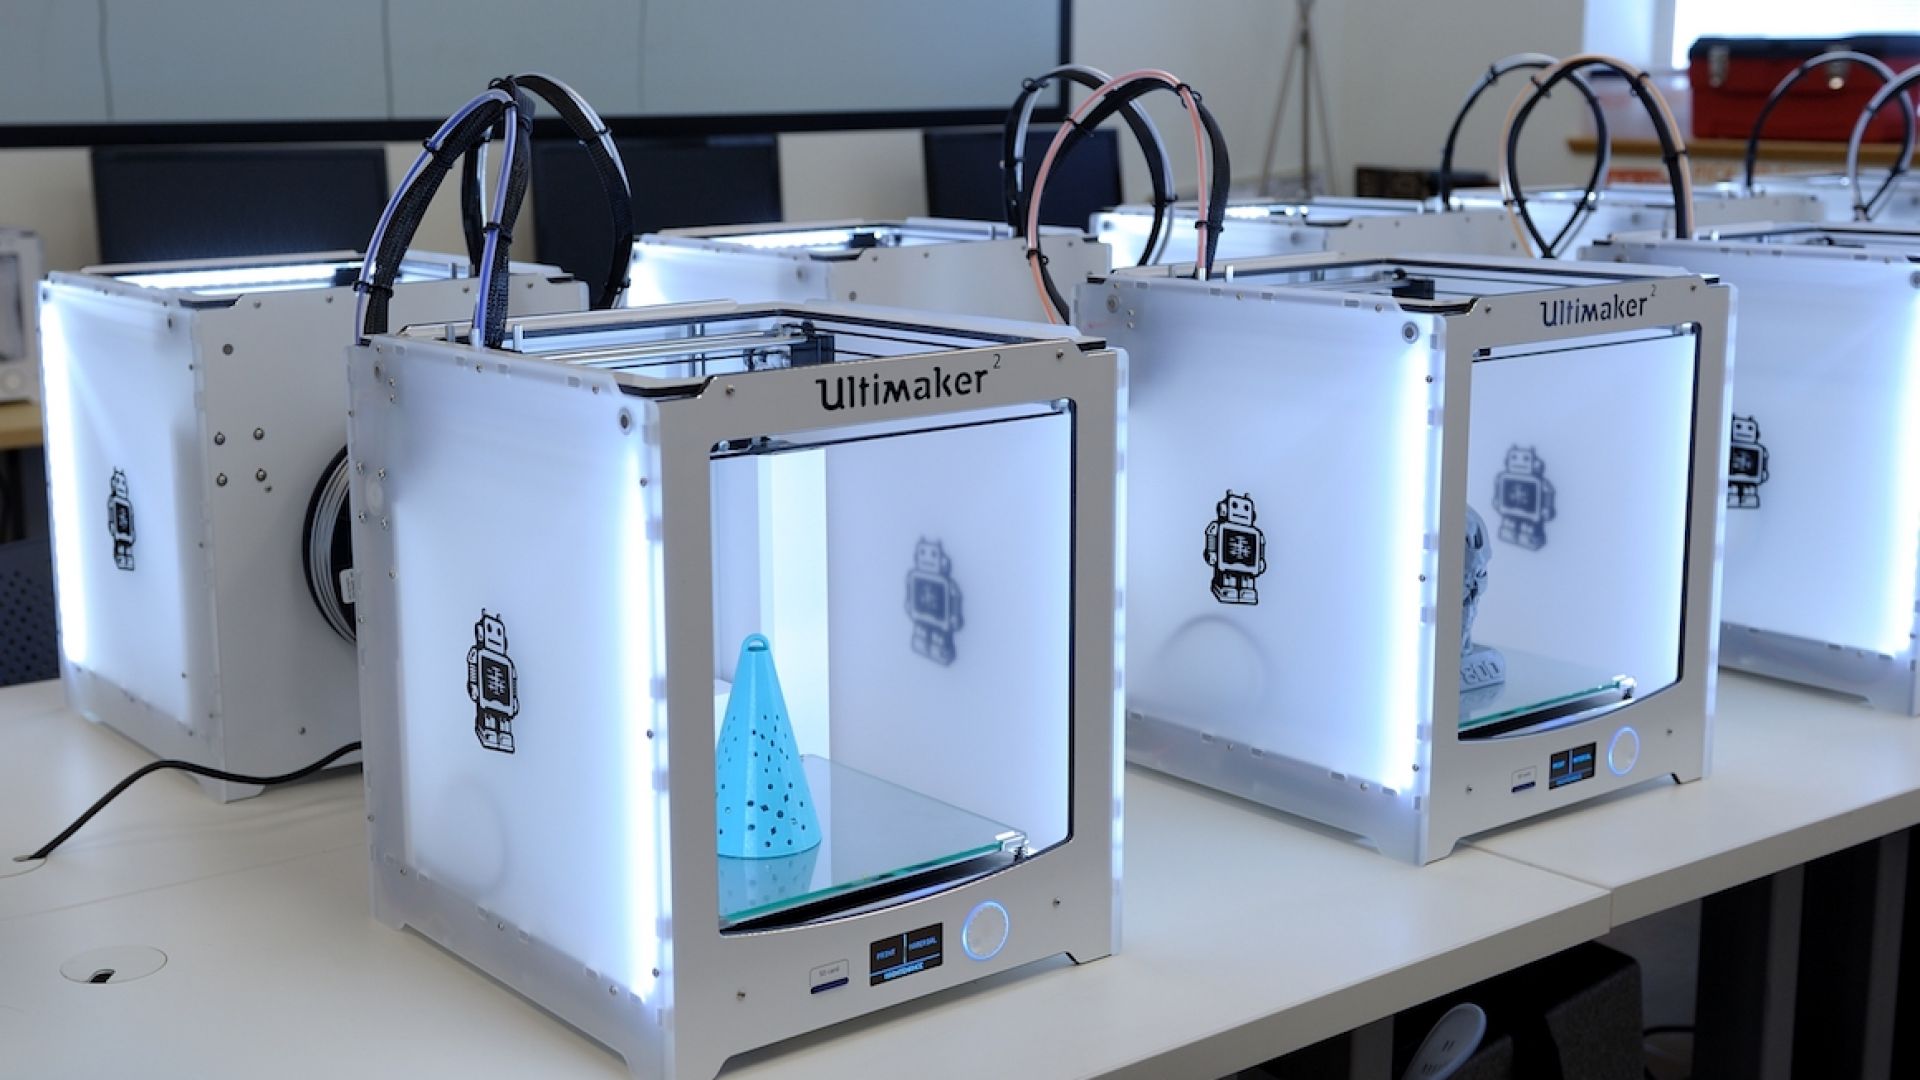 MakerLab spremno dočekuje 3D budućnost